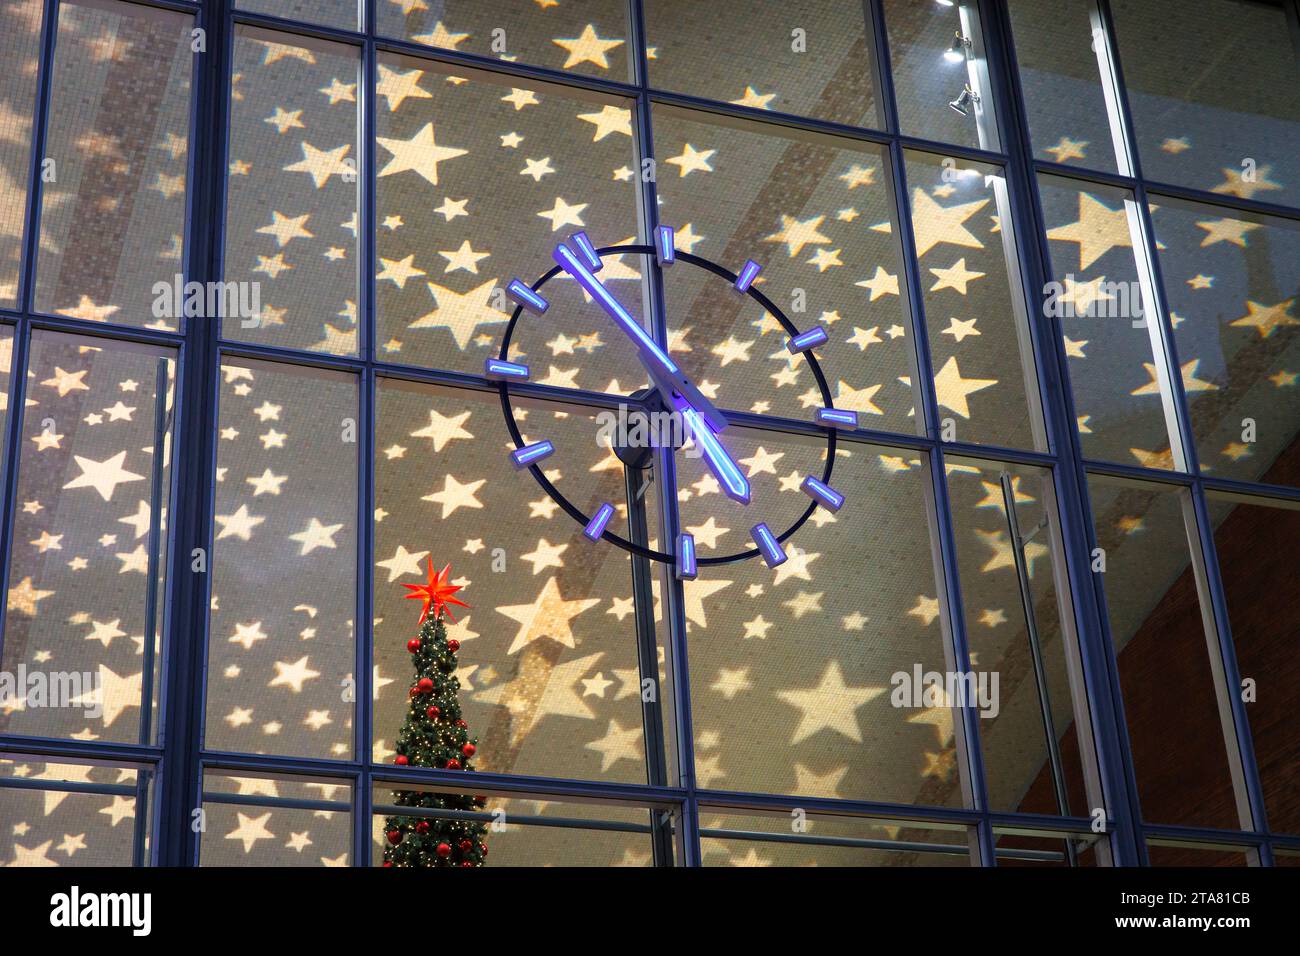 Orologio della stazione centrale durante il periodo natalizio, soffitto illuminato a Natale, Colonia, Germania. Uhr am Hauptbahnhof waehrend der Weihnachtszeit, Foto Stock